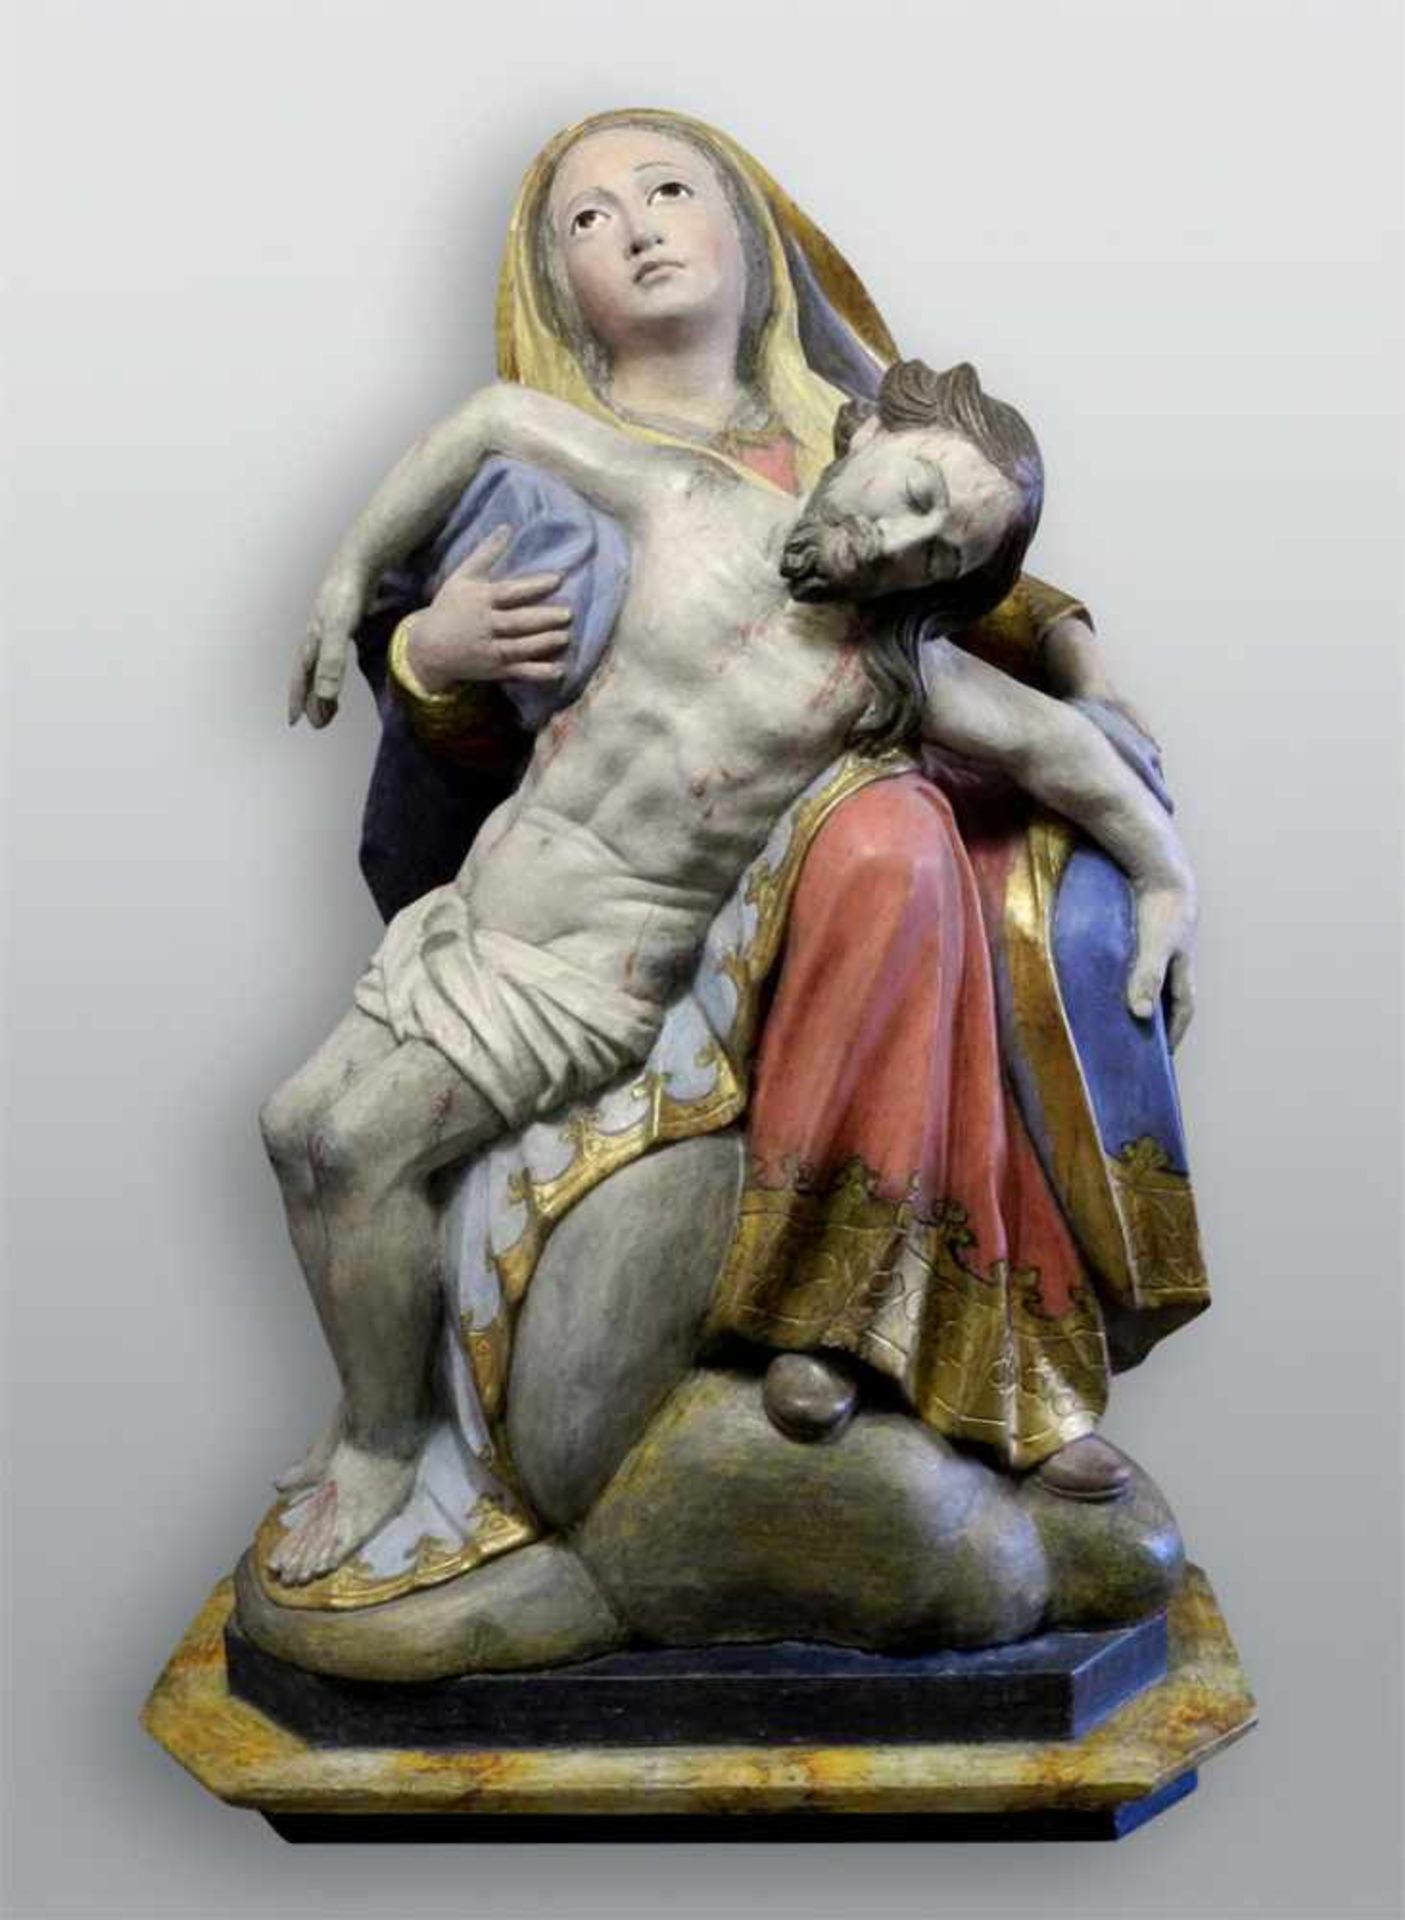 Italienische PietàHolz geschnitzt, farbig gefasst. Große Pietá mit leidender Mutter Gottes, in ihren